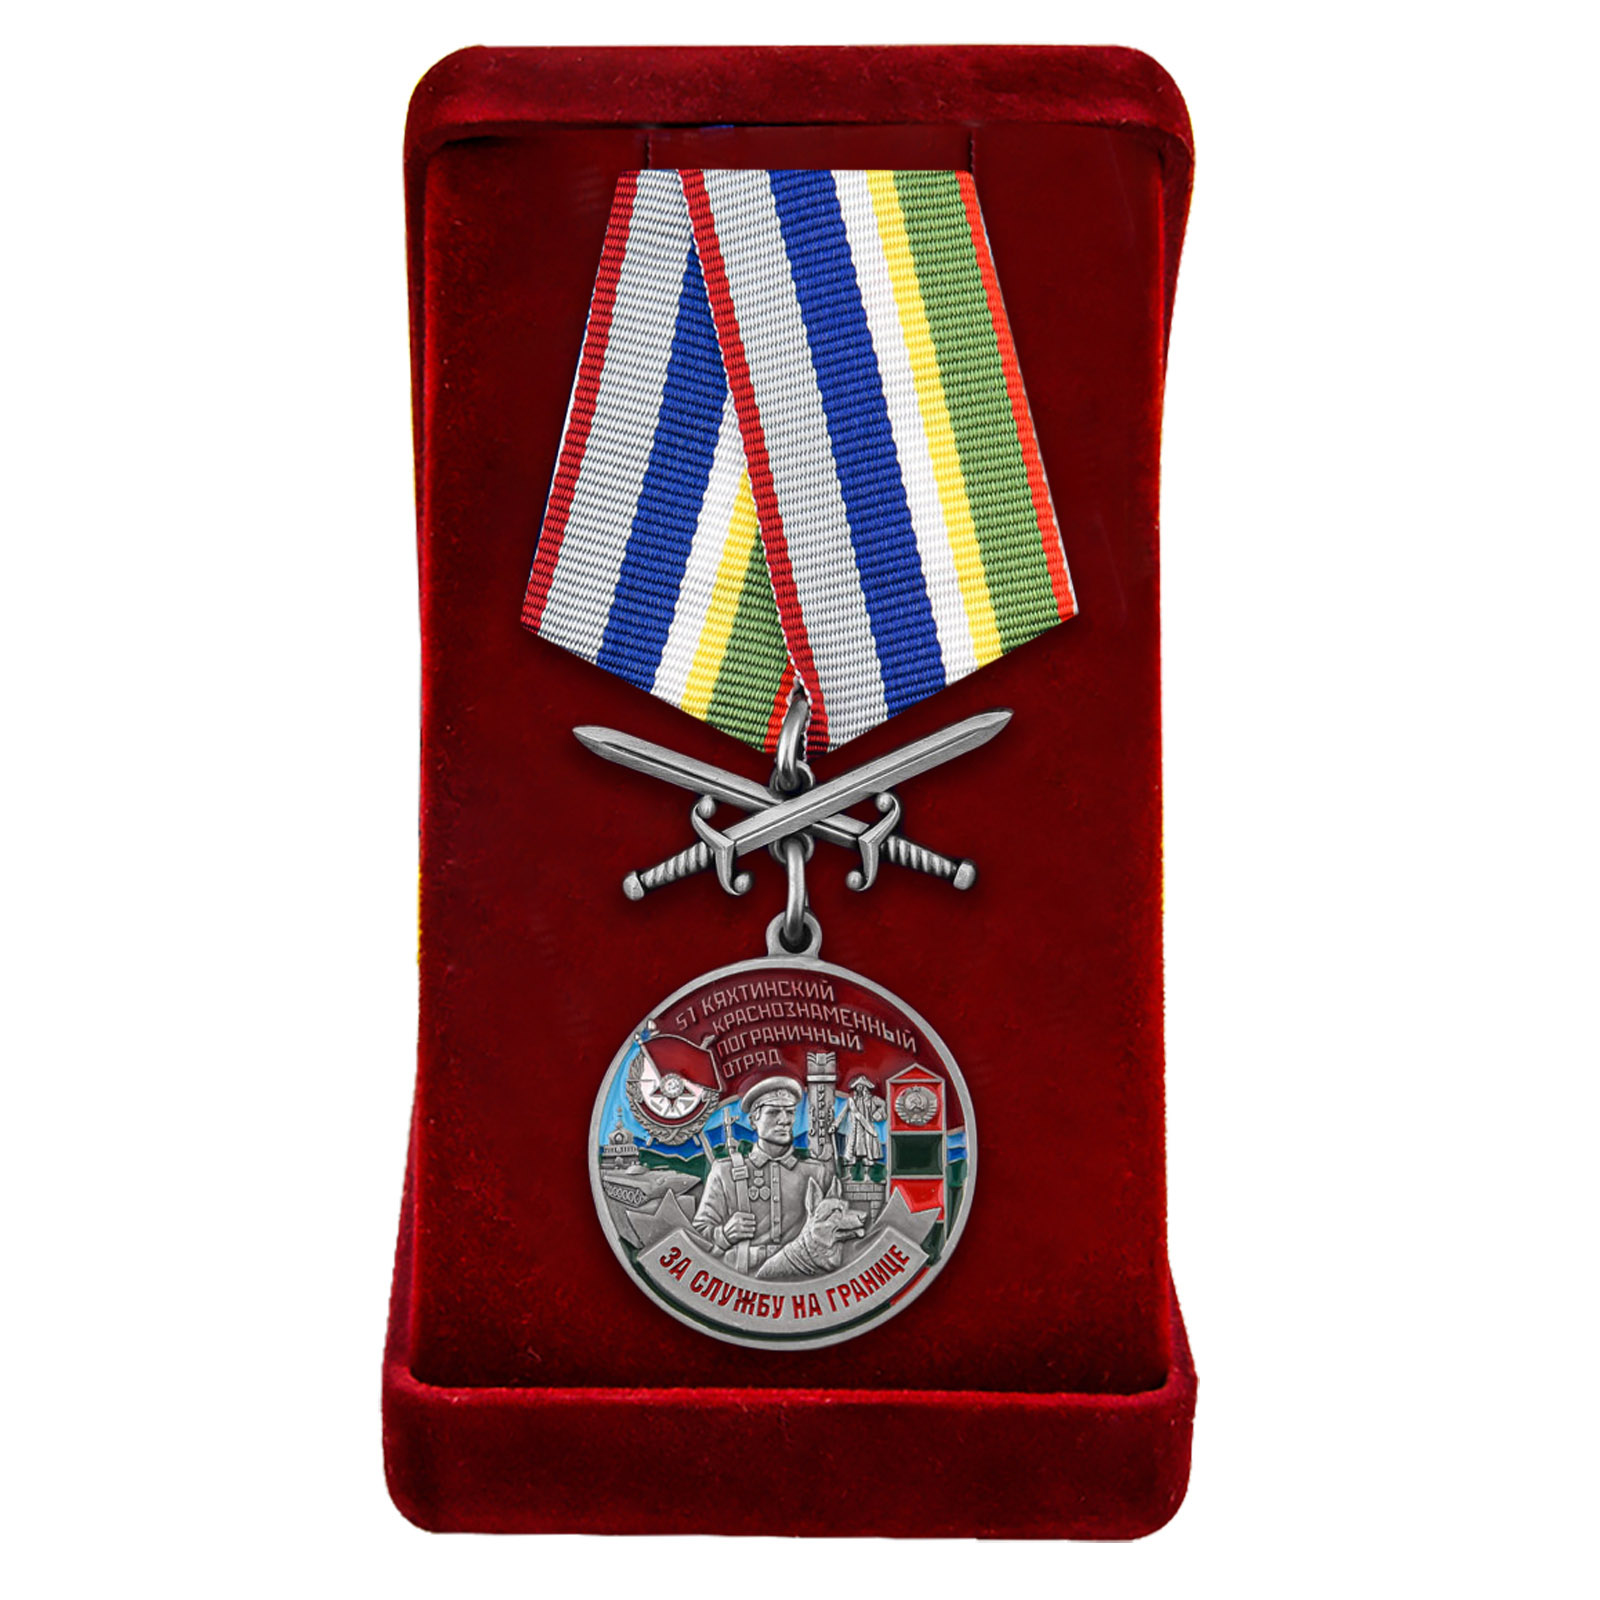 Купить медаль "За службу в Кяхтинском погранотряде" в бархатистом футляре